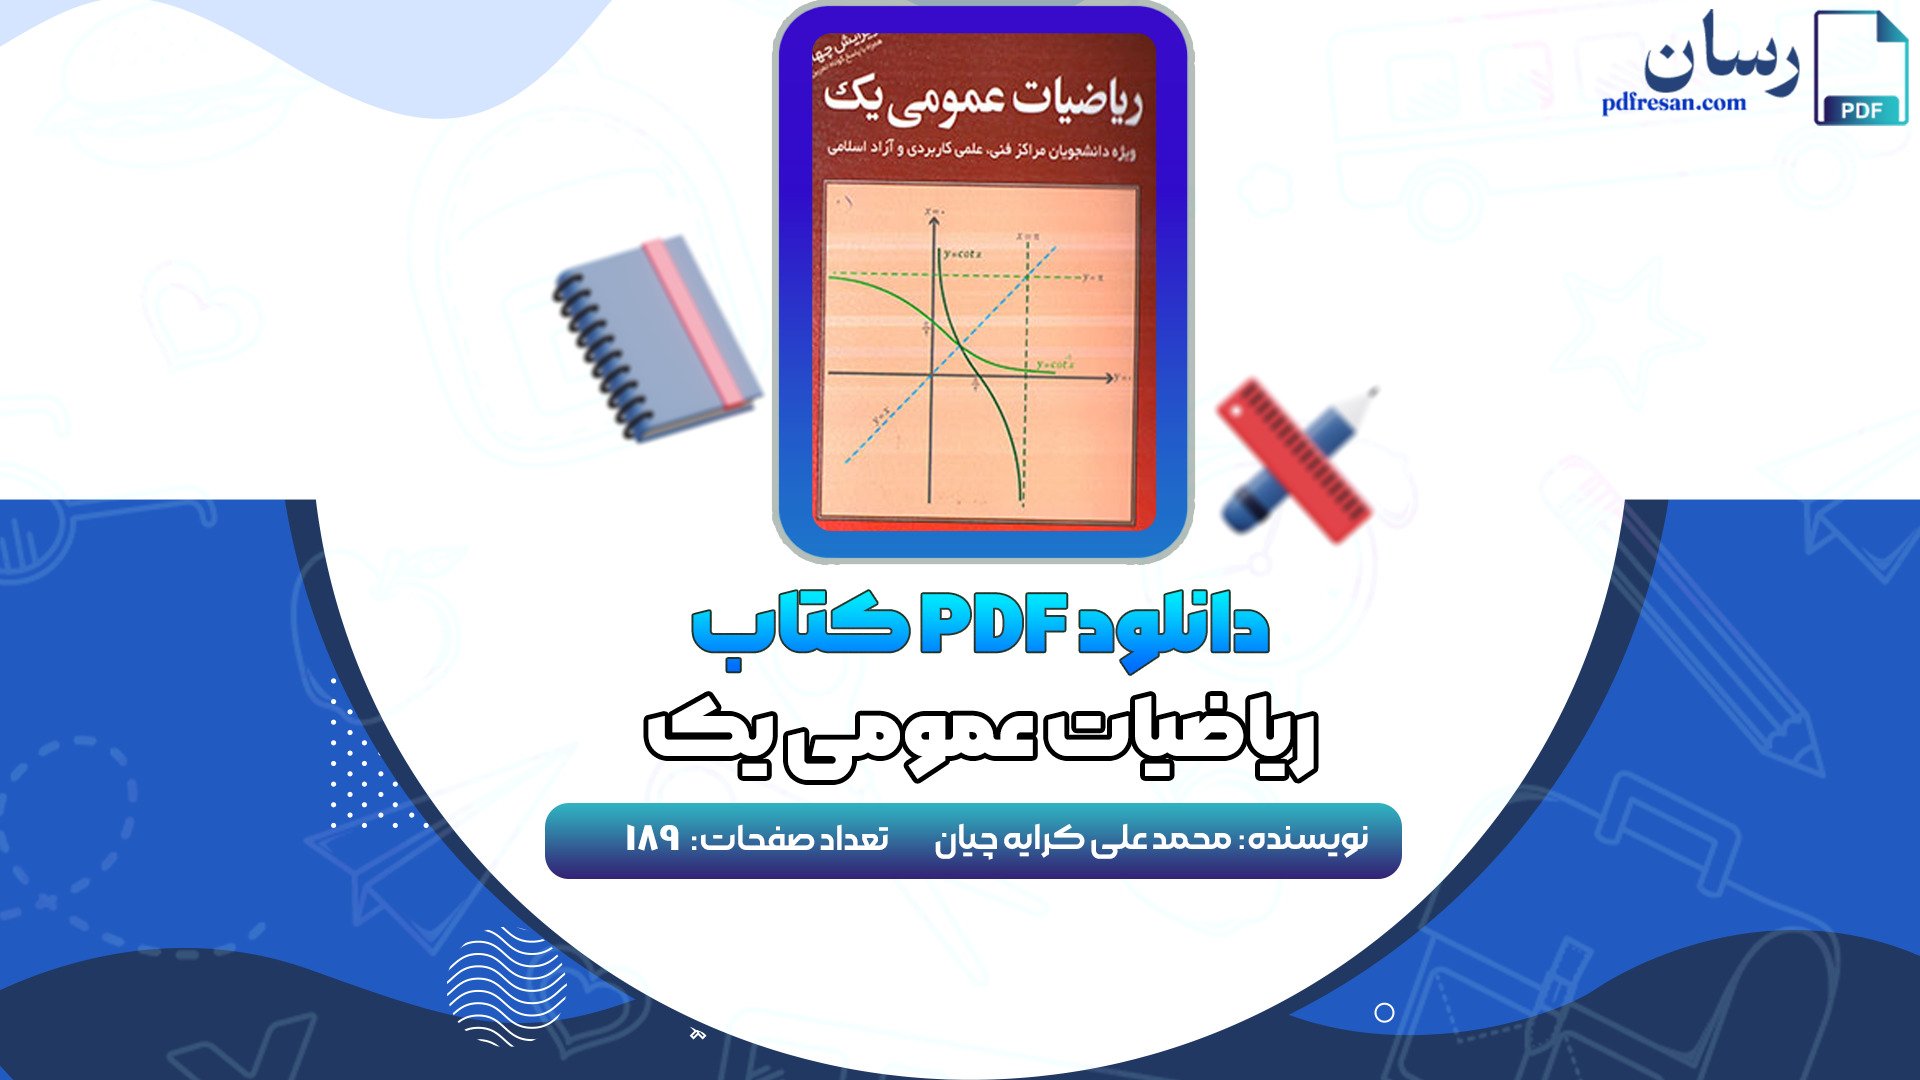 دانلود کتاب ریاضیات عمومی 1 محمد علی کرایه چیان PDF